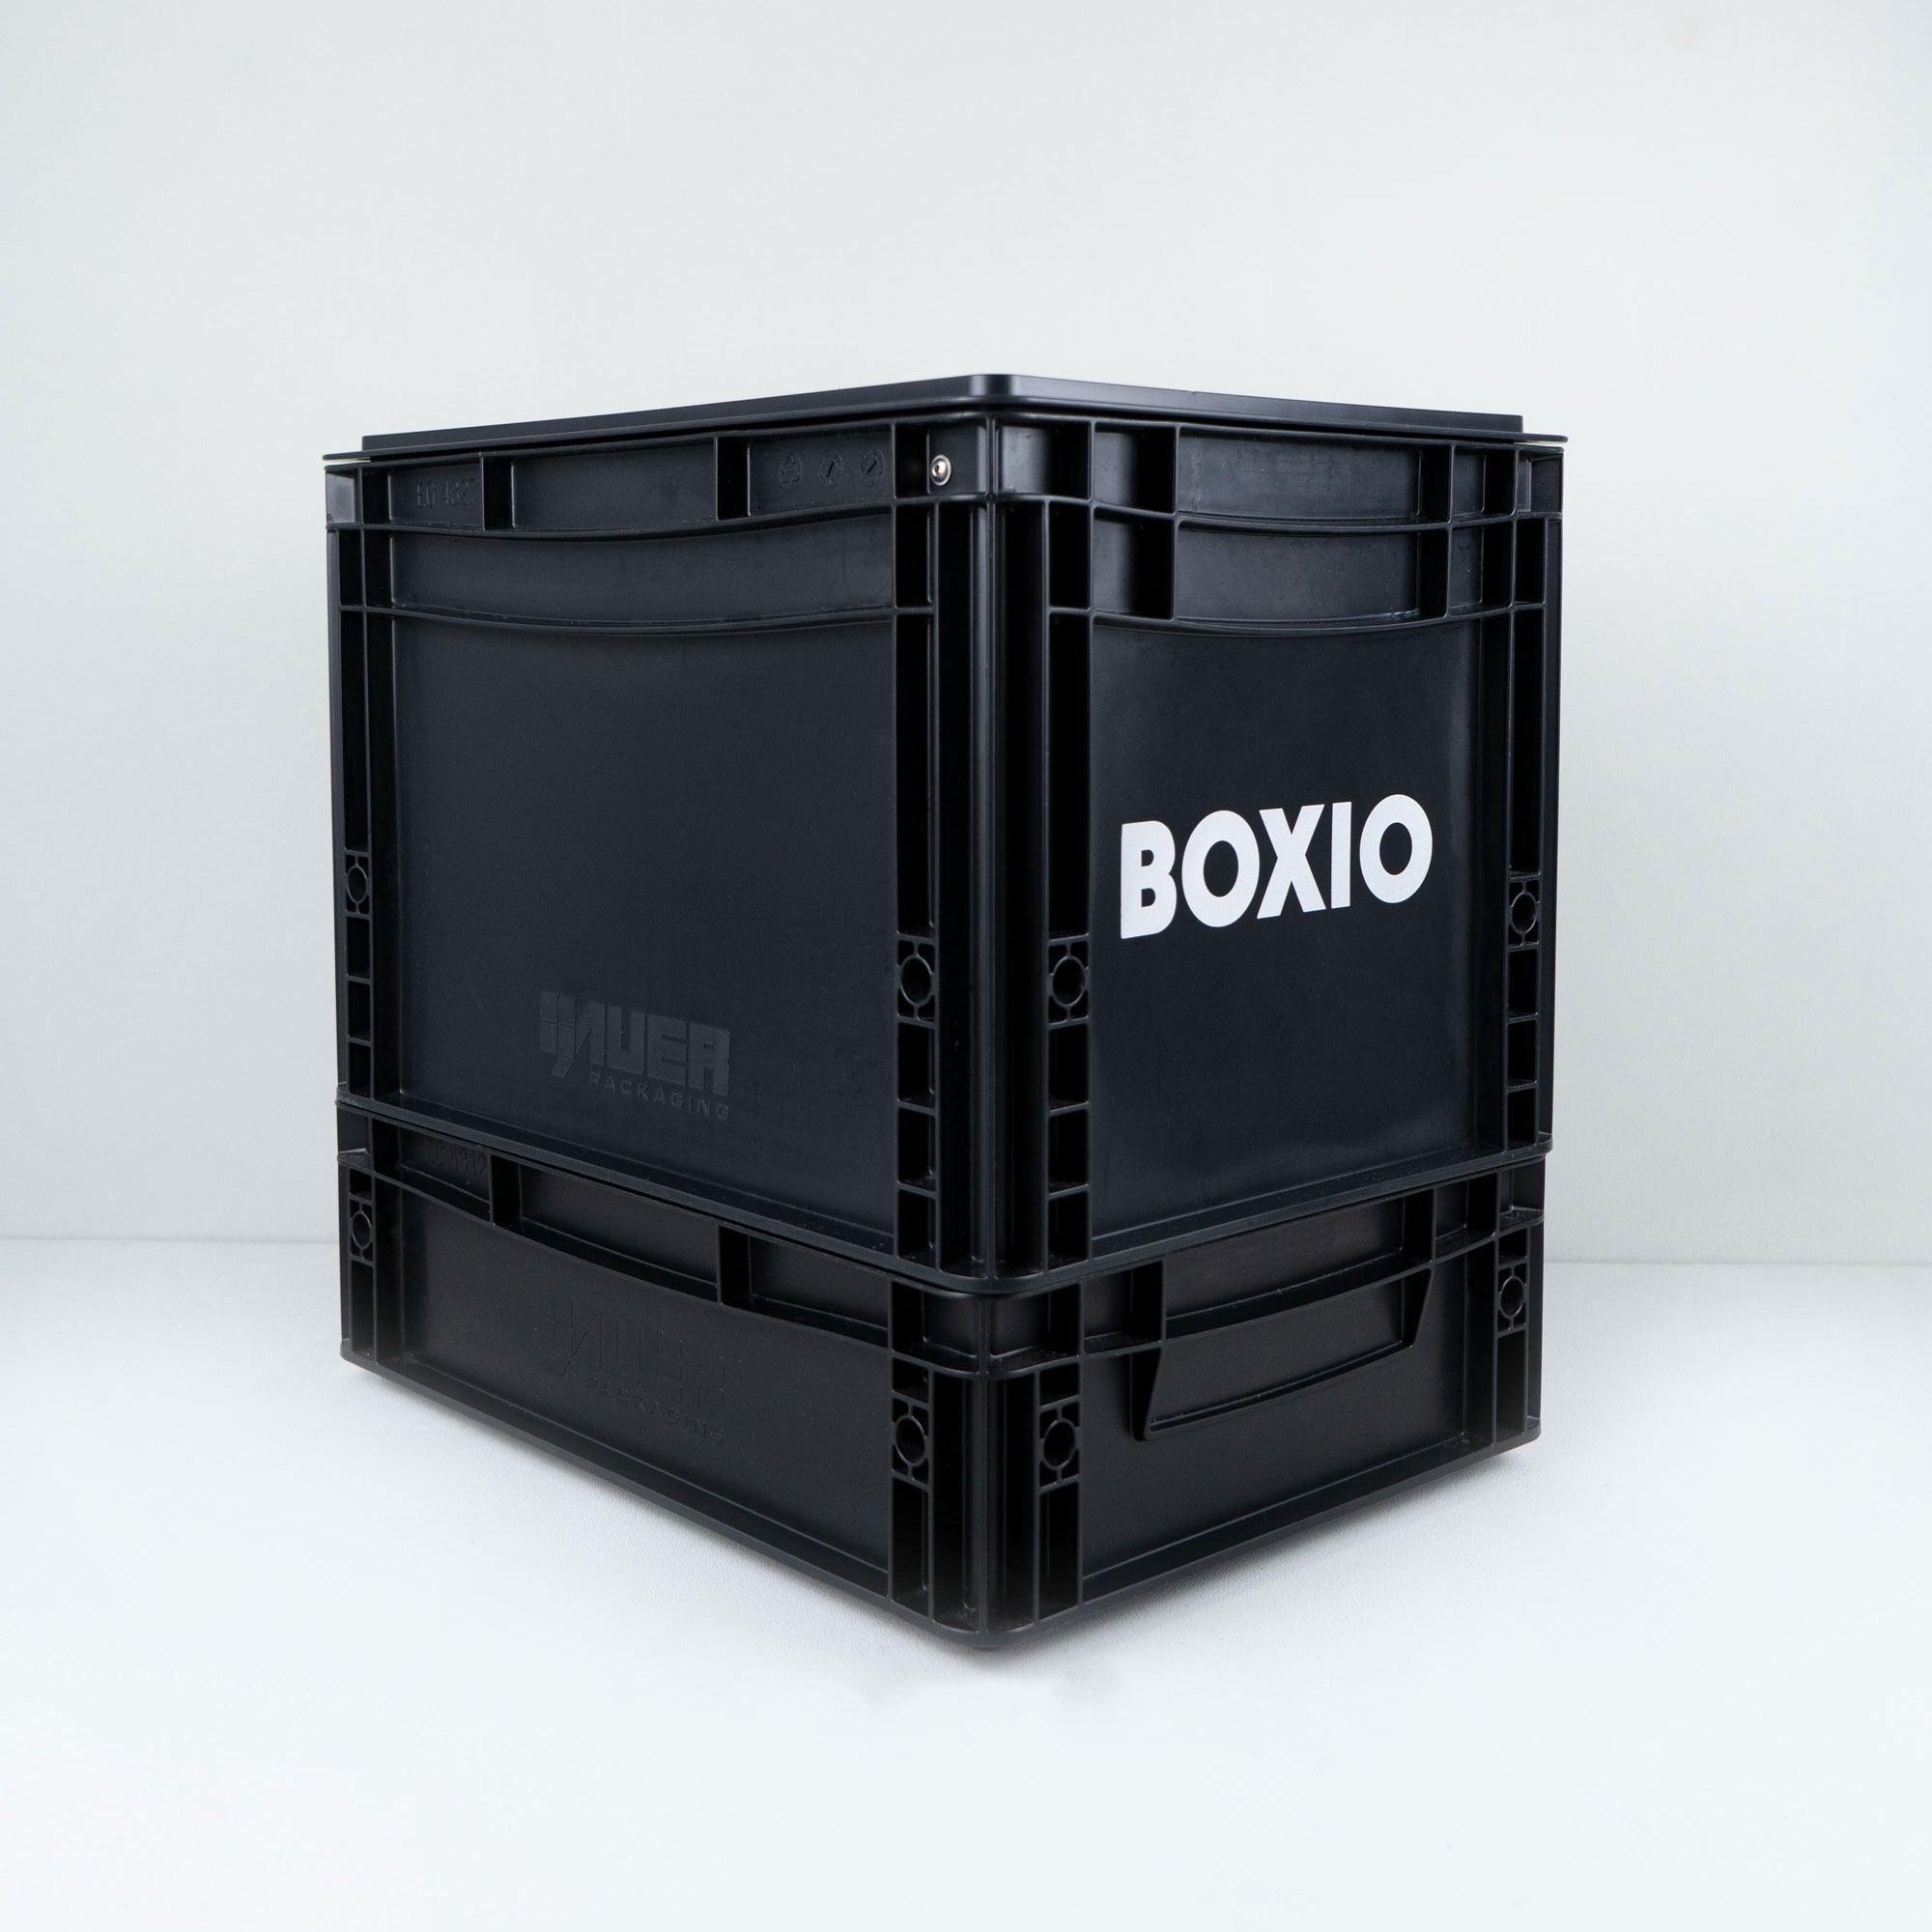 BOXIO – SOLO UP